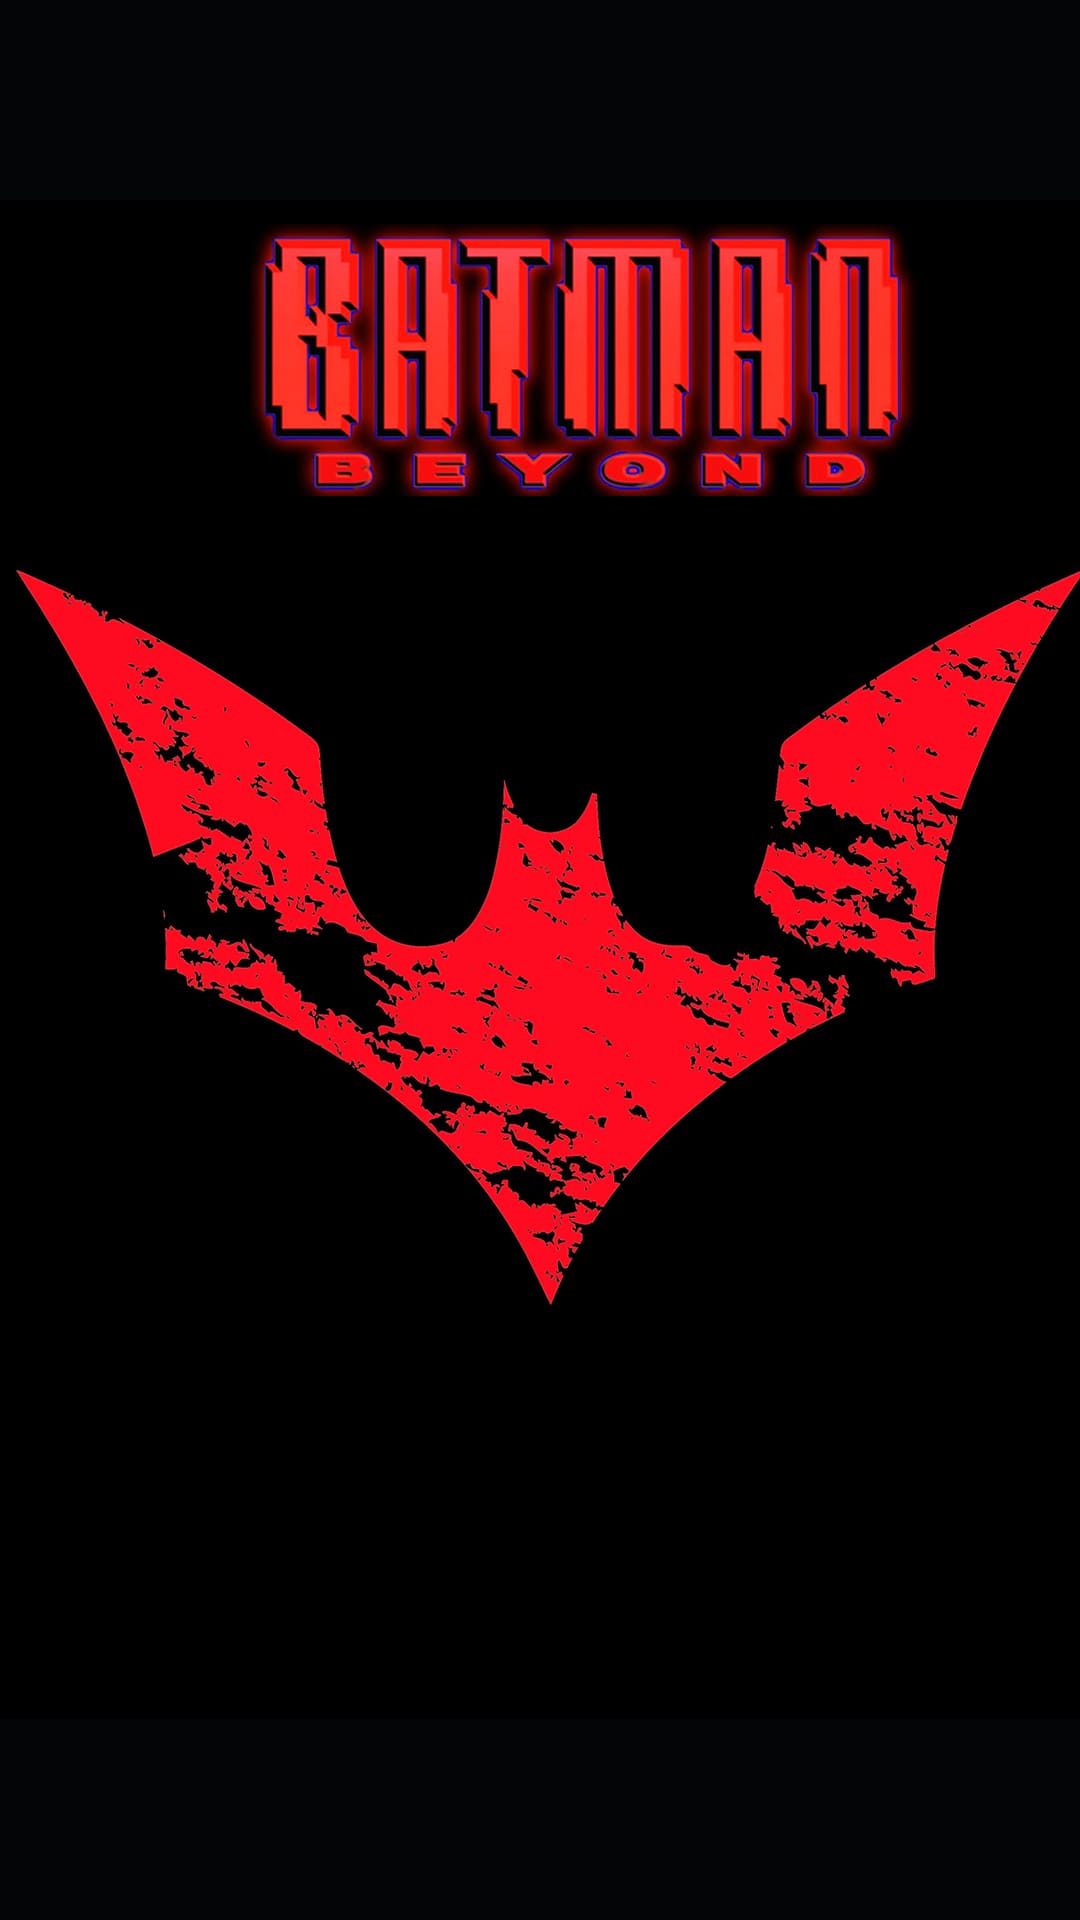 Batman Beyond Wallpapers